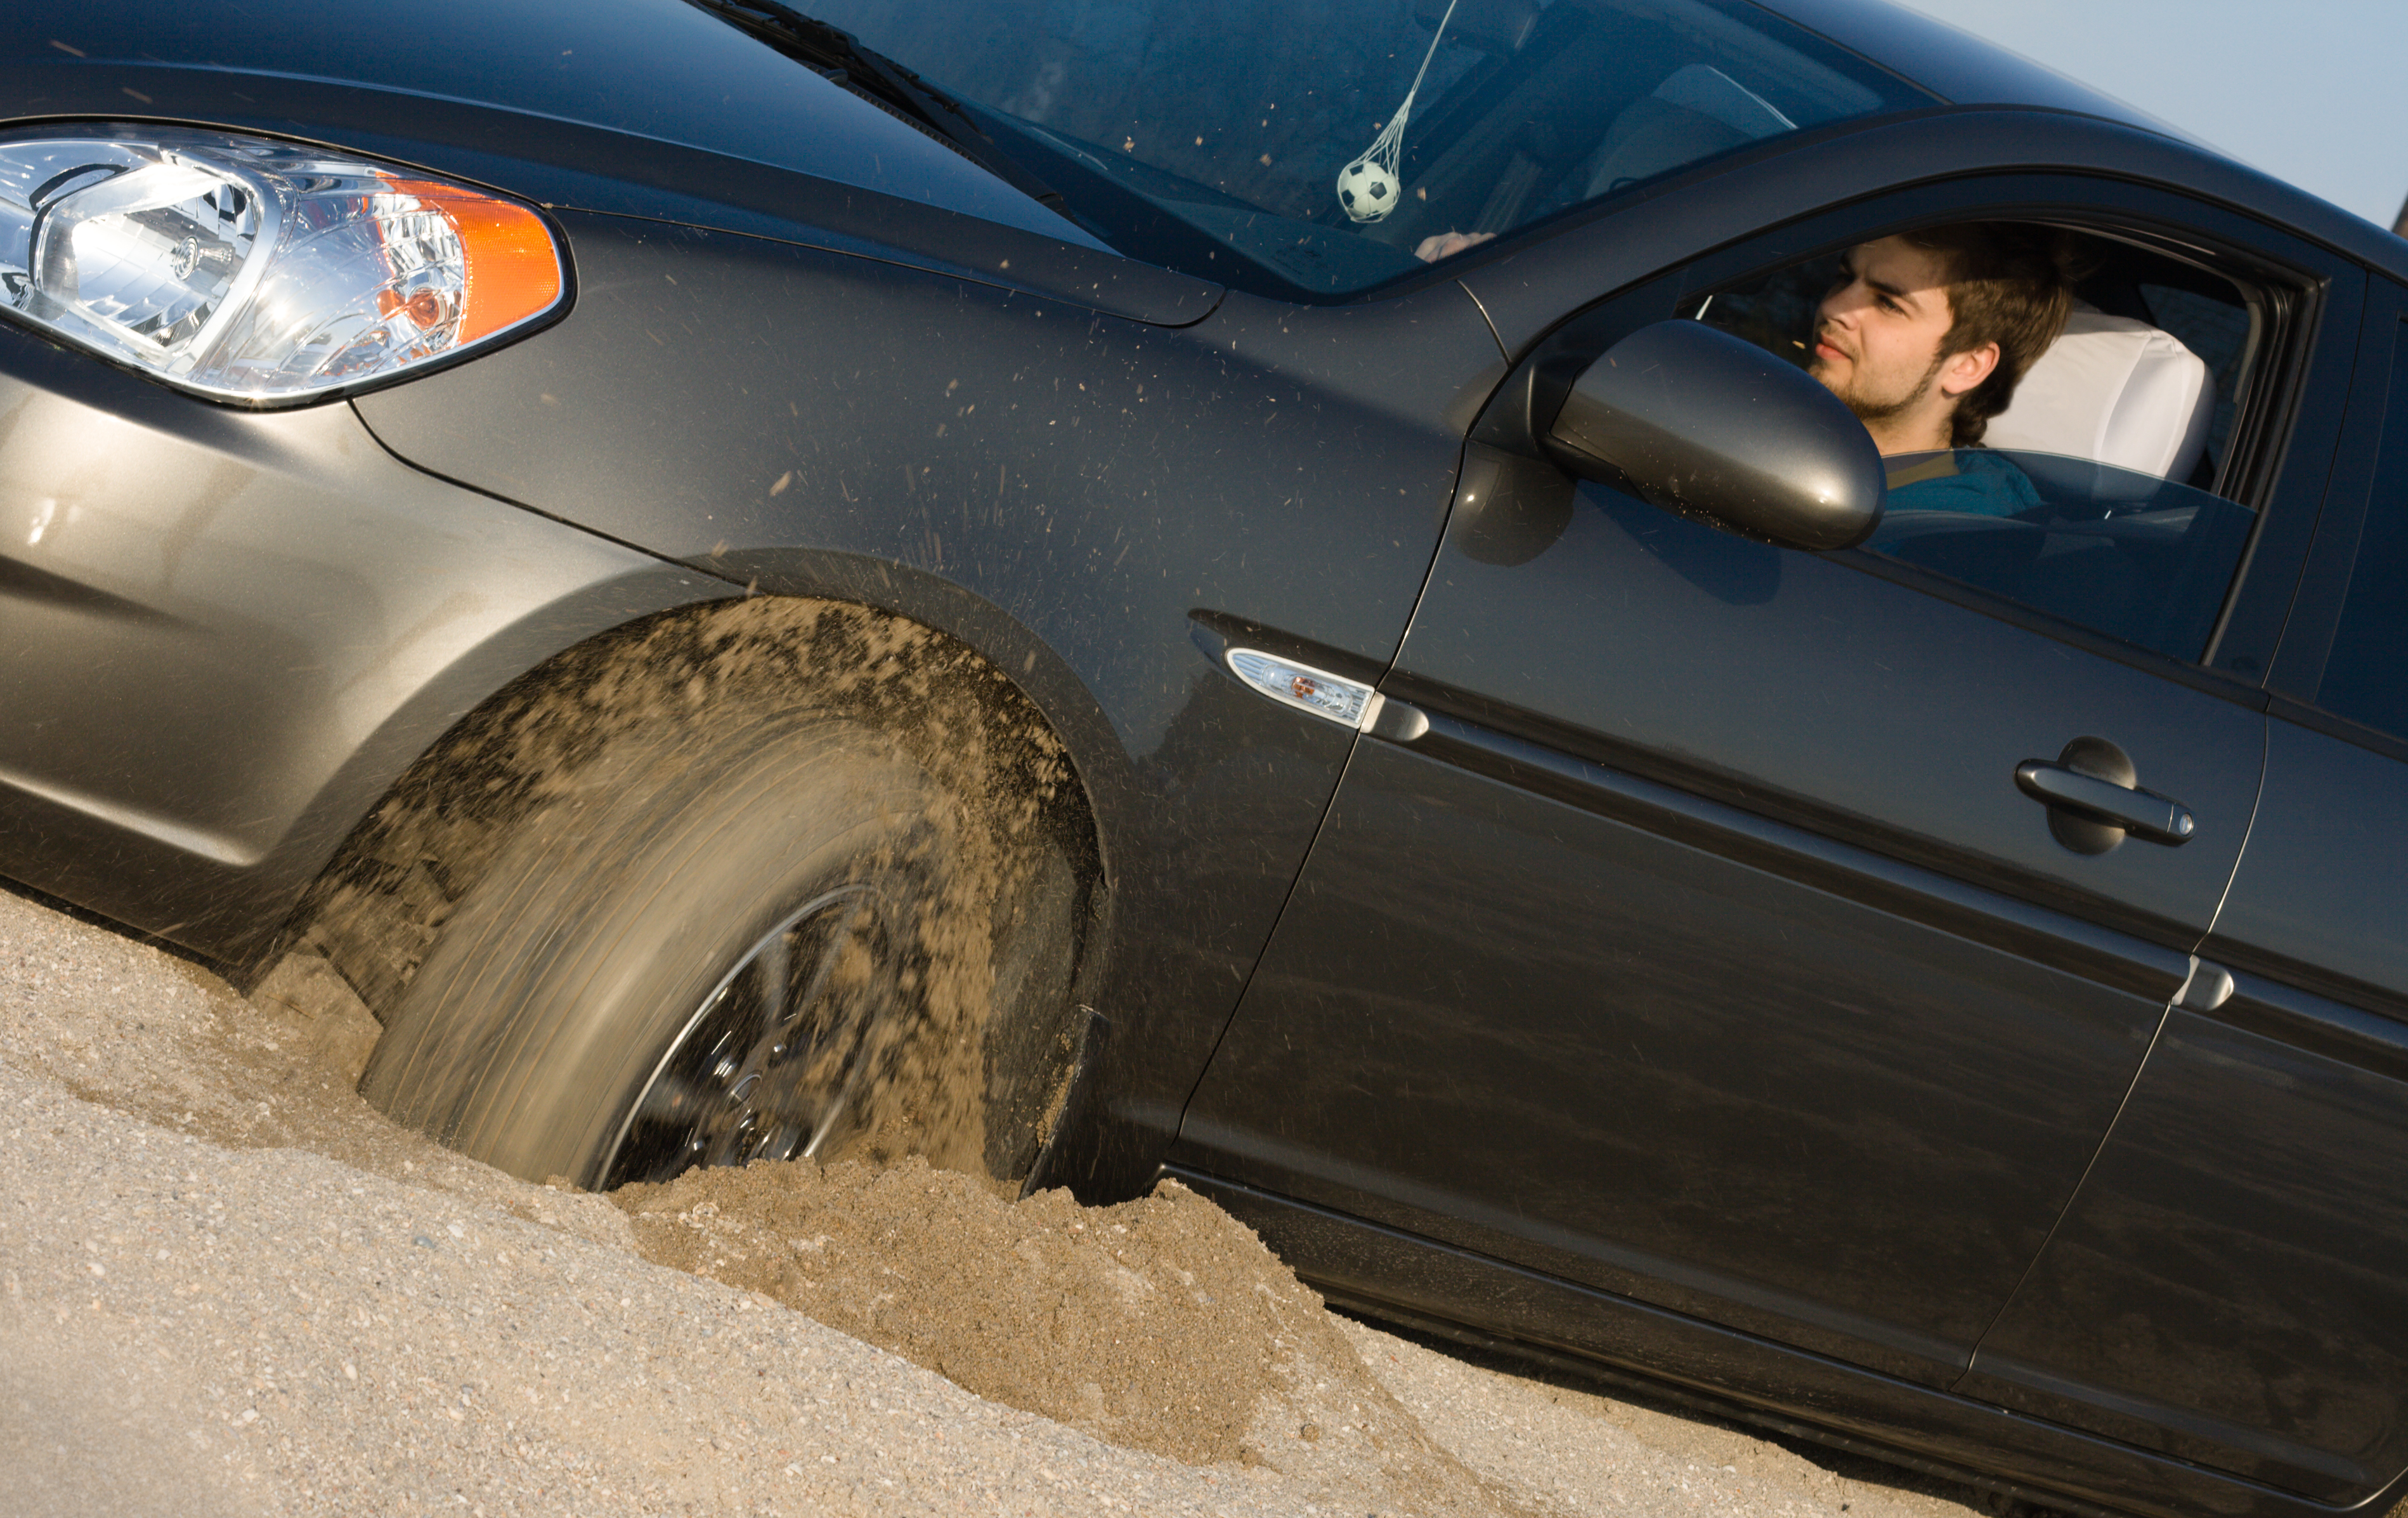 Автомобиль внезапно заглохнуть на дороге потому. Машина буксует. Машина застряла в песке. Машина с песком. Автомобиль забуксовал.